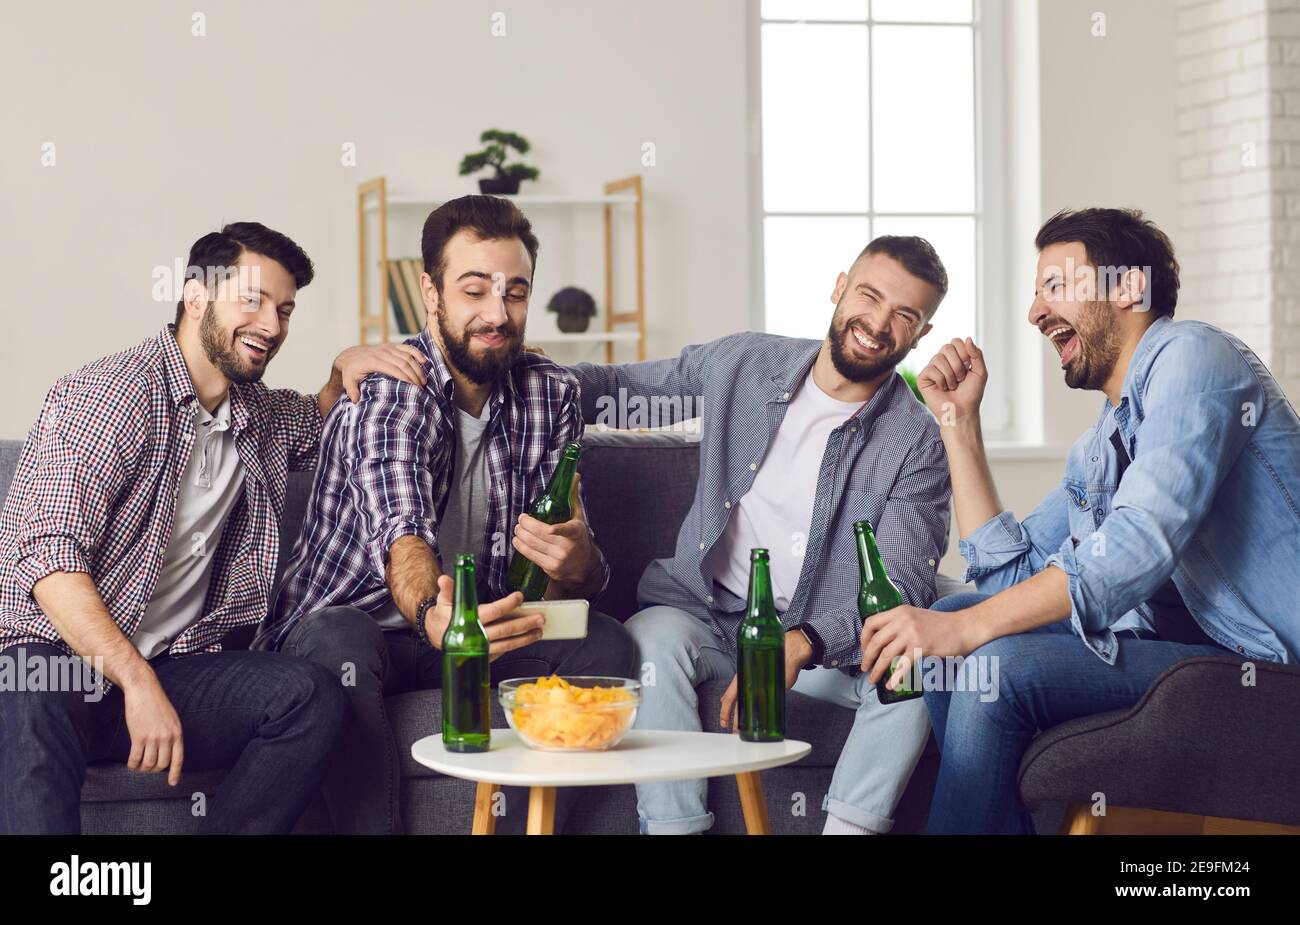 Souriant, des amis enthousiastes boivent de la bière, mangent des en-cas et font du selfie pendant la fête à la maison Banque D'Images